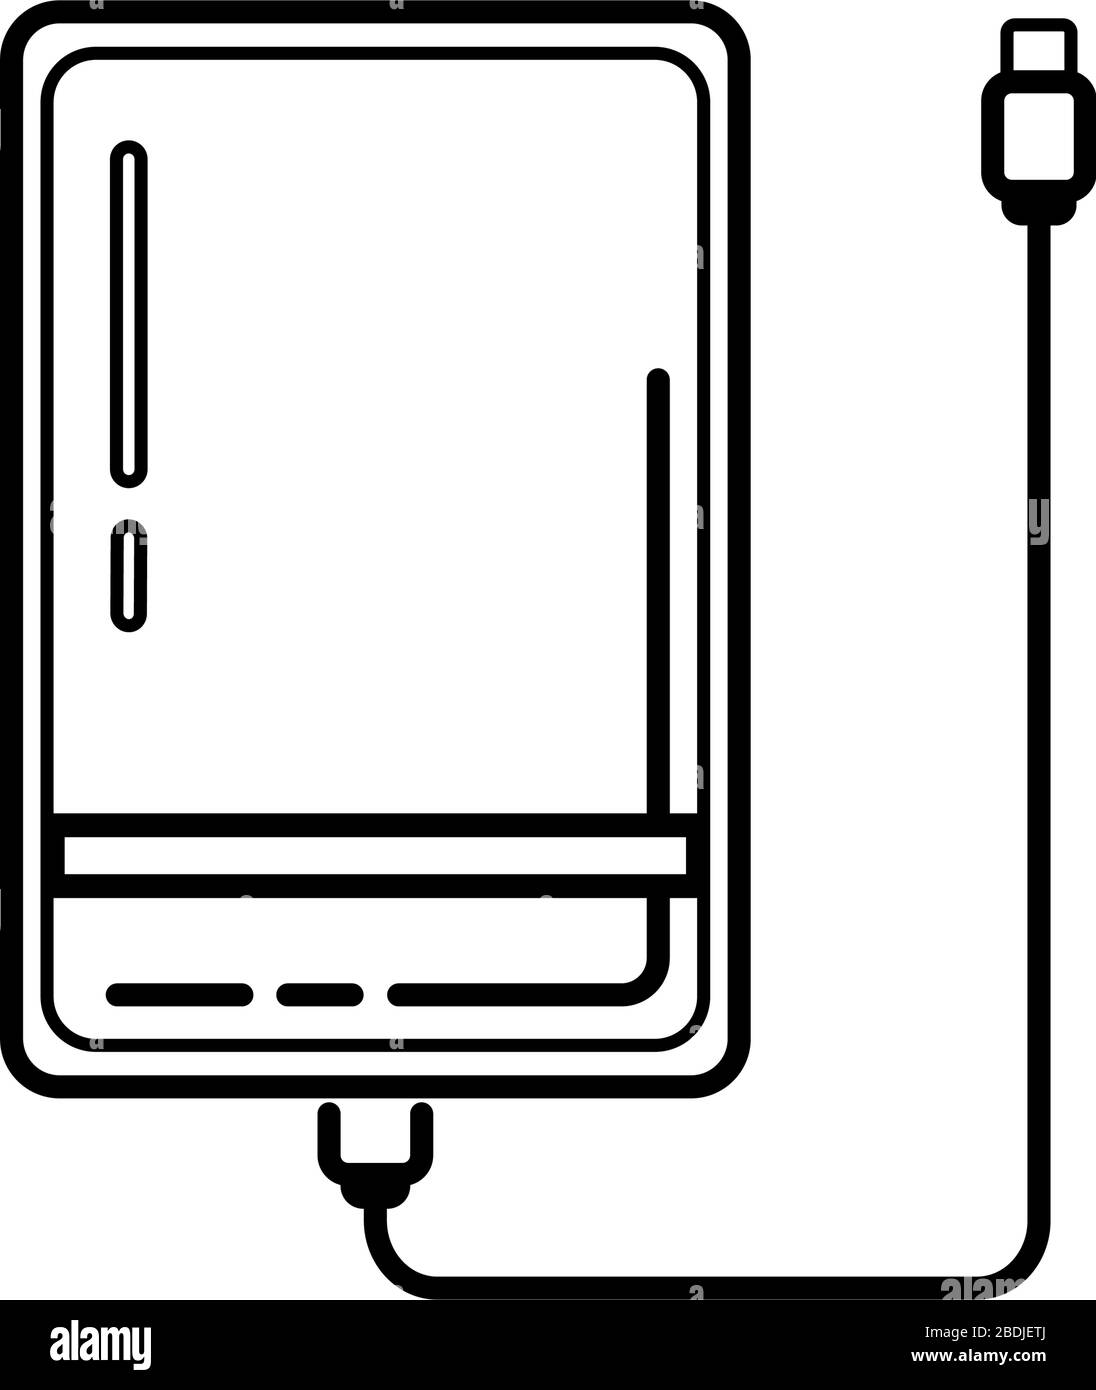 Icona dell'unità disco rigido esterna in linea con cavo USB isolato su  sfondo bianco. Powerbank per la ricarica di dispositivi mobili. Disco  rigido esterno portatile. Illustrazione del vettore dell'unità di memoria  Immagine